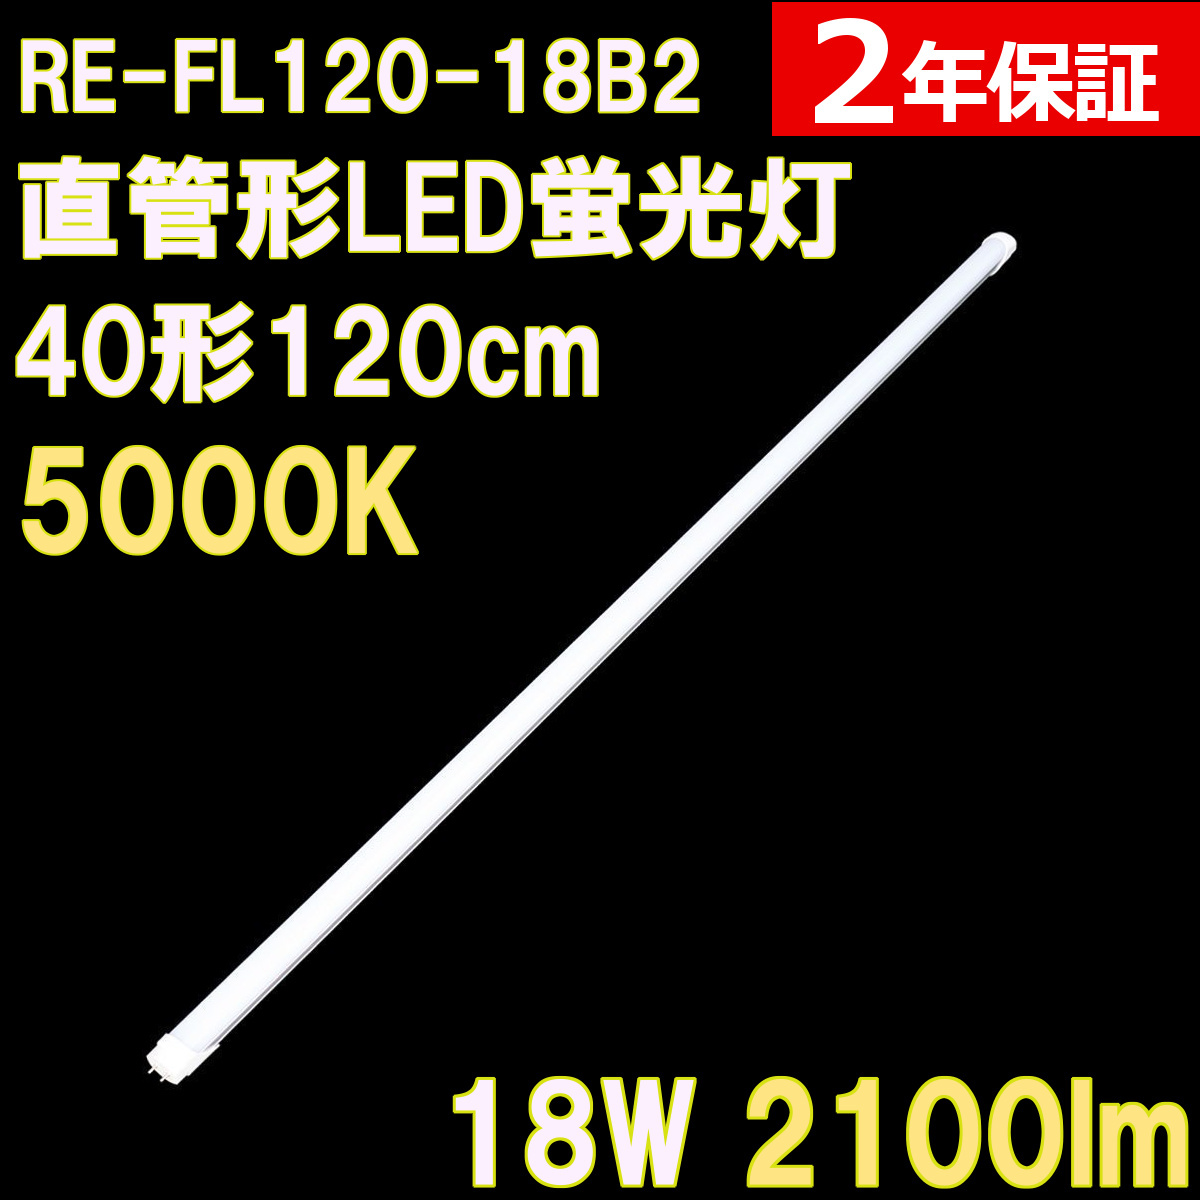 角度調整回転式 直管形LED蛍光灯40形(120cm) 21W 2300ルーメン 2年保証